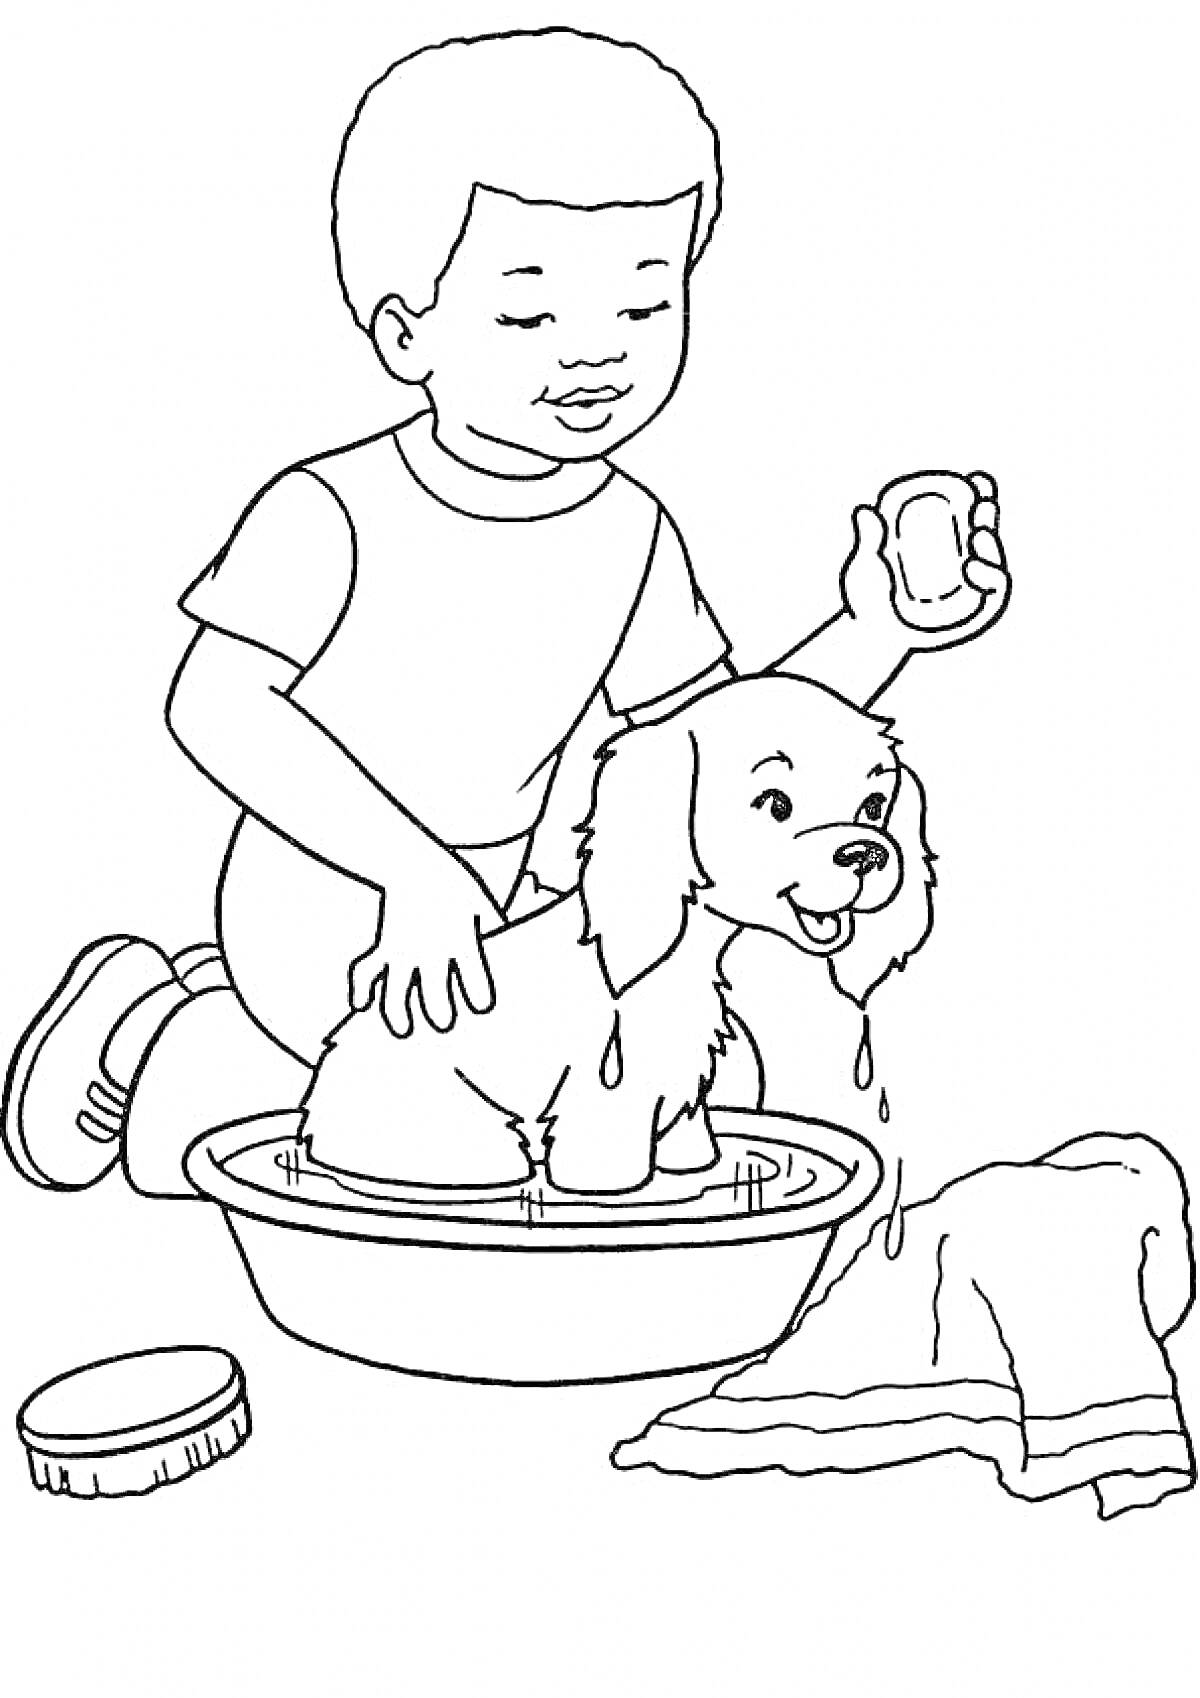 Раскраска Мальчик моет щенка в тазике, используя губку, рядом лежит полотенце и щетка